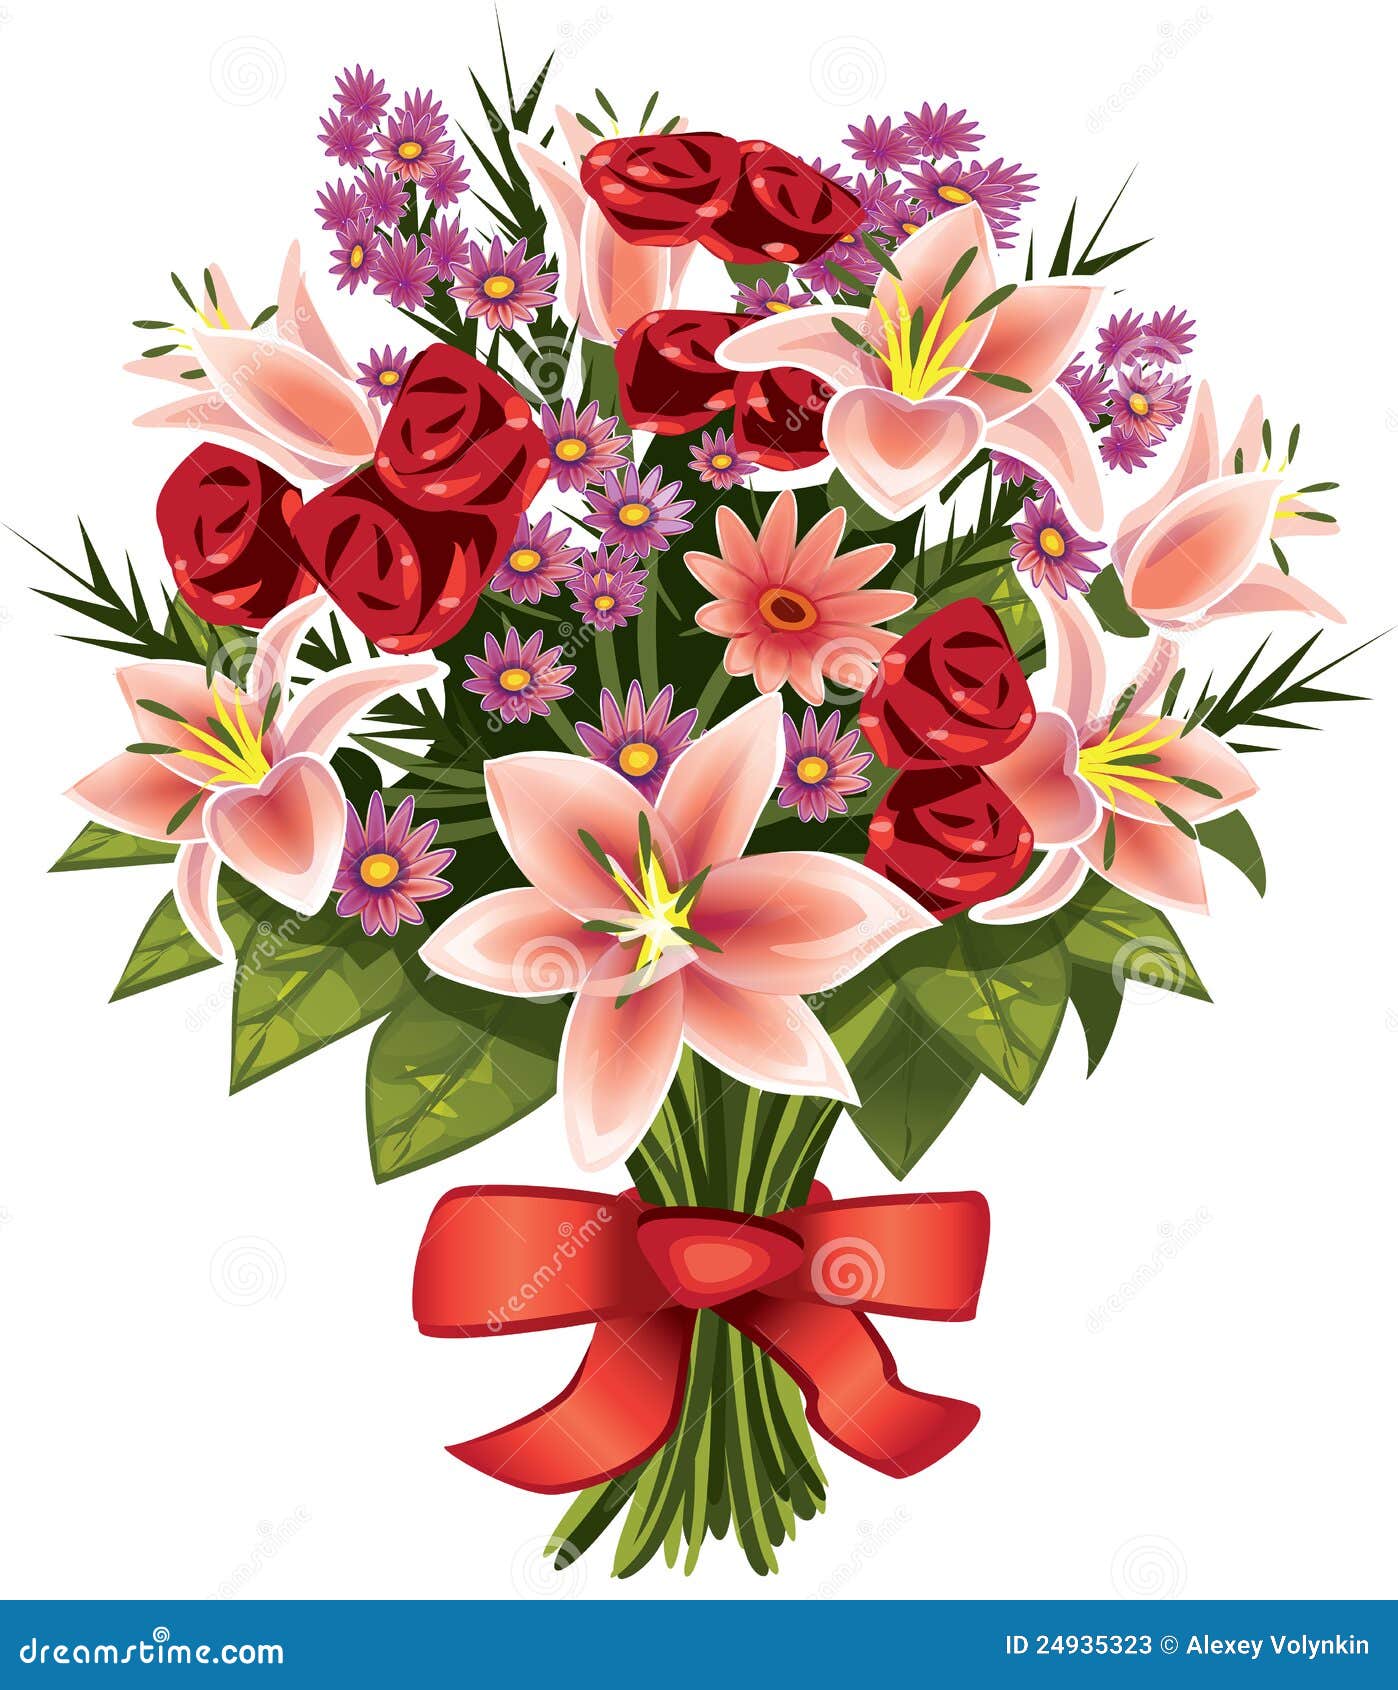 bouquet-flowers-24935323.jpg